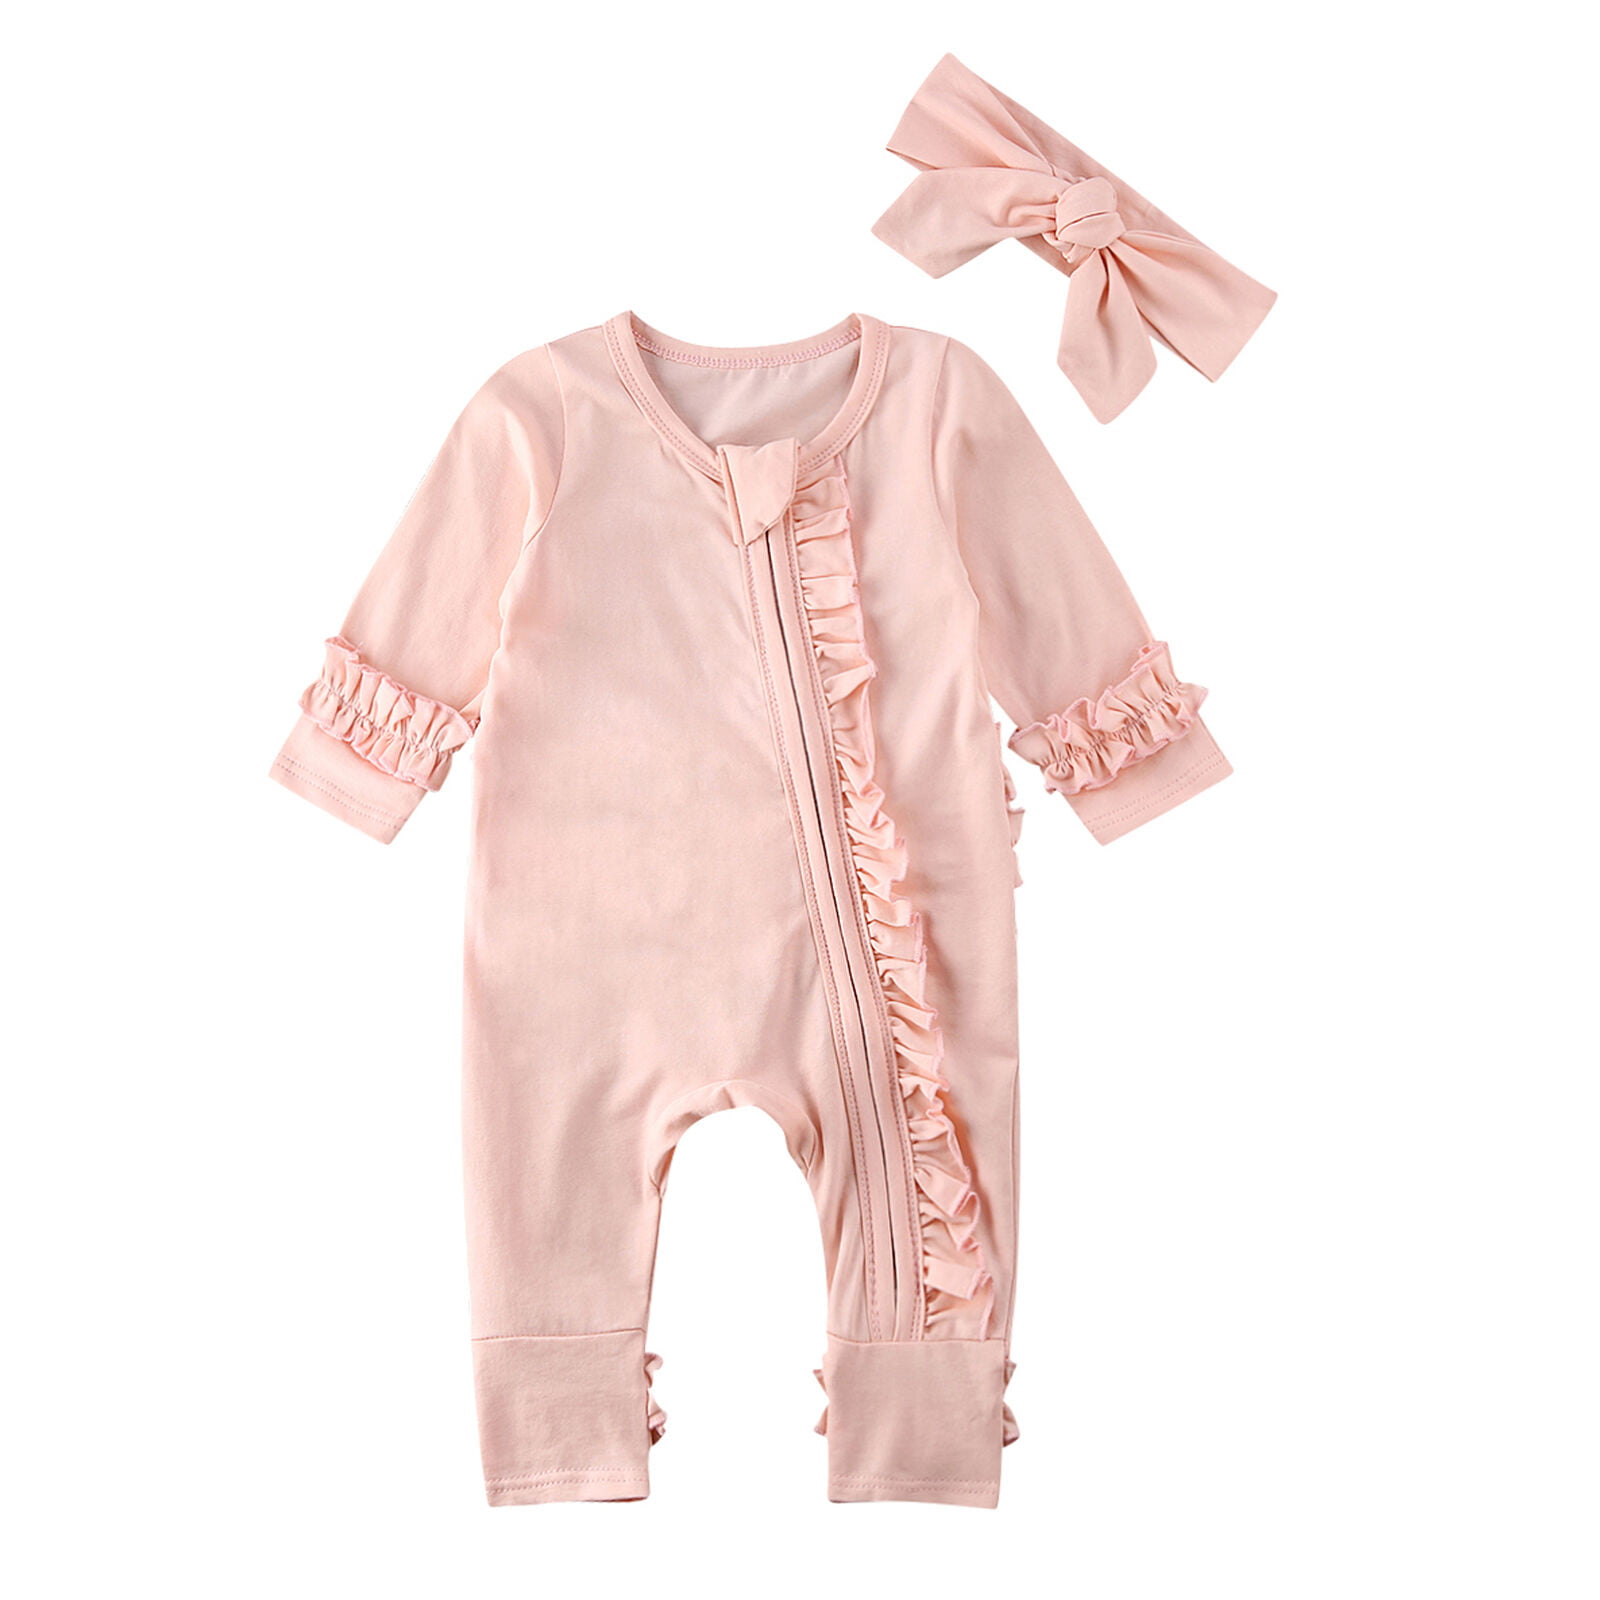 Baby Kids Boy Girl Infant Zipper Romper Jumpsuit Bodysuit Cotton Clothes Outfits 